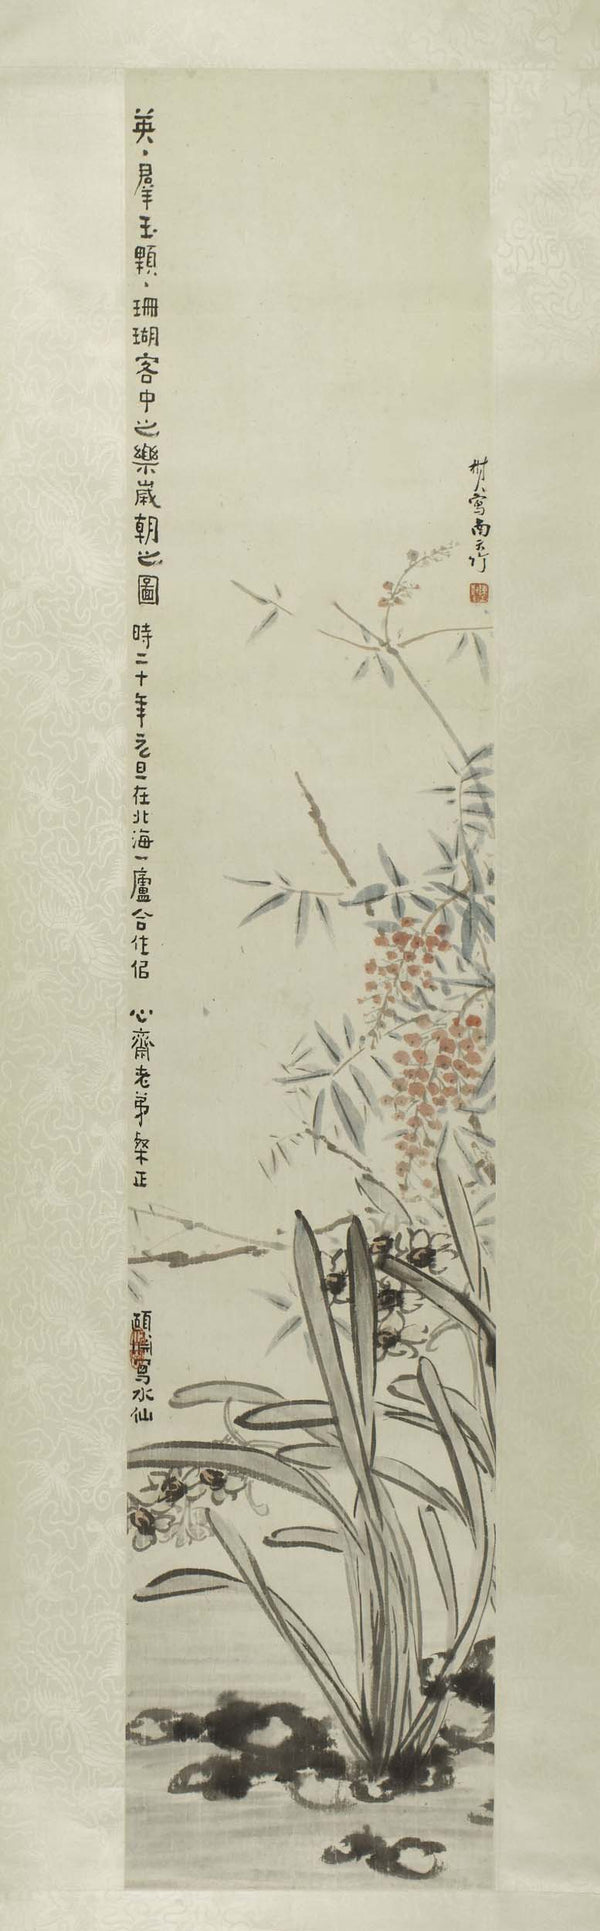 hengyijing-heng-yi-jing-hengyi-1931-new-year-painting-art-print-fine-art-reproduction-wall-art